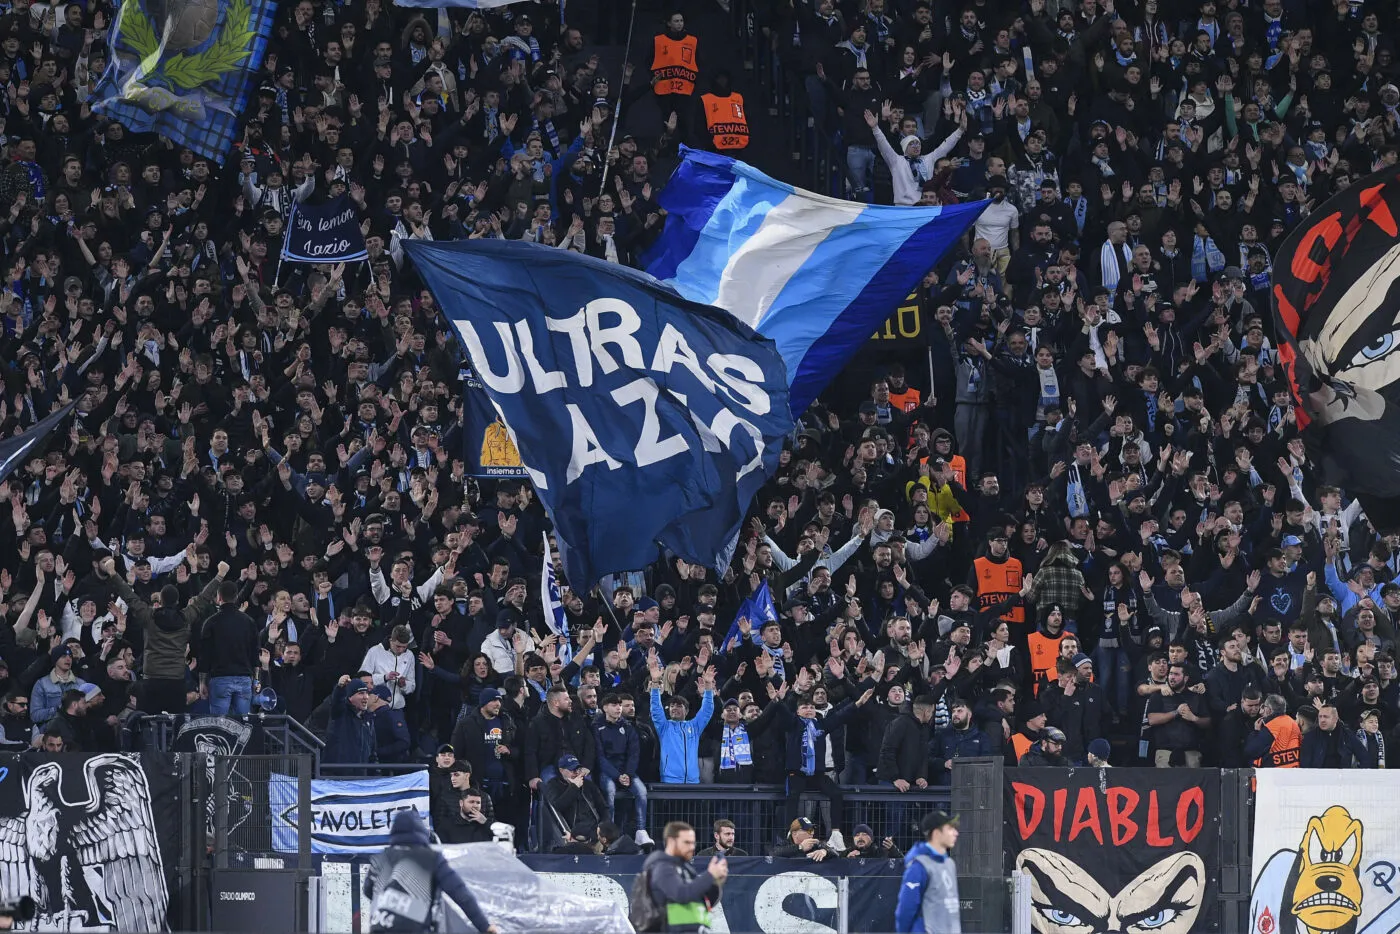 Les supporters de la Lazio (encore) accusés d'antisémitisme